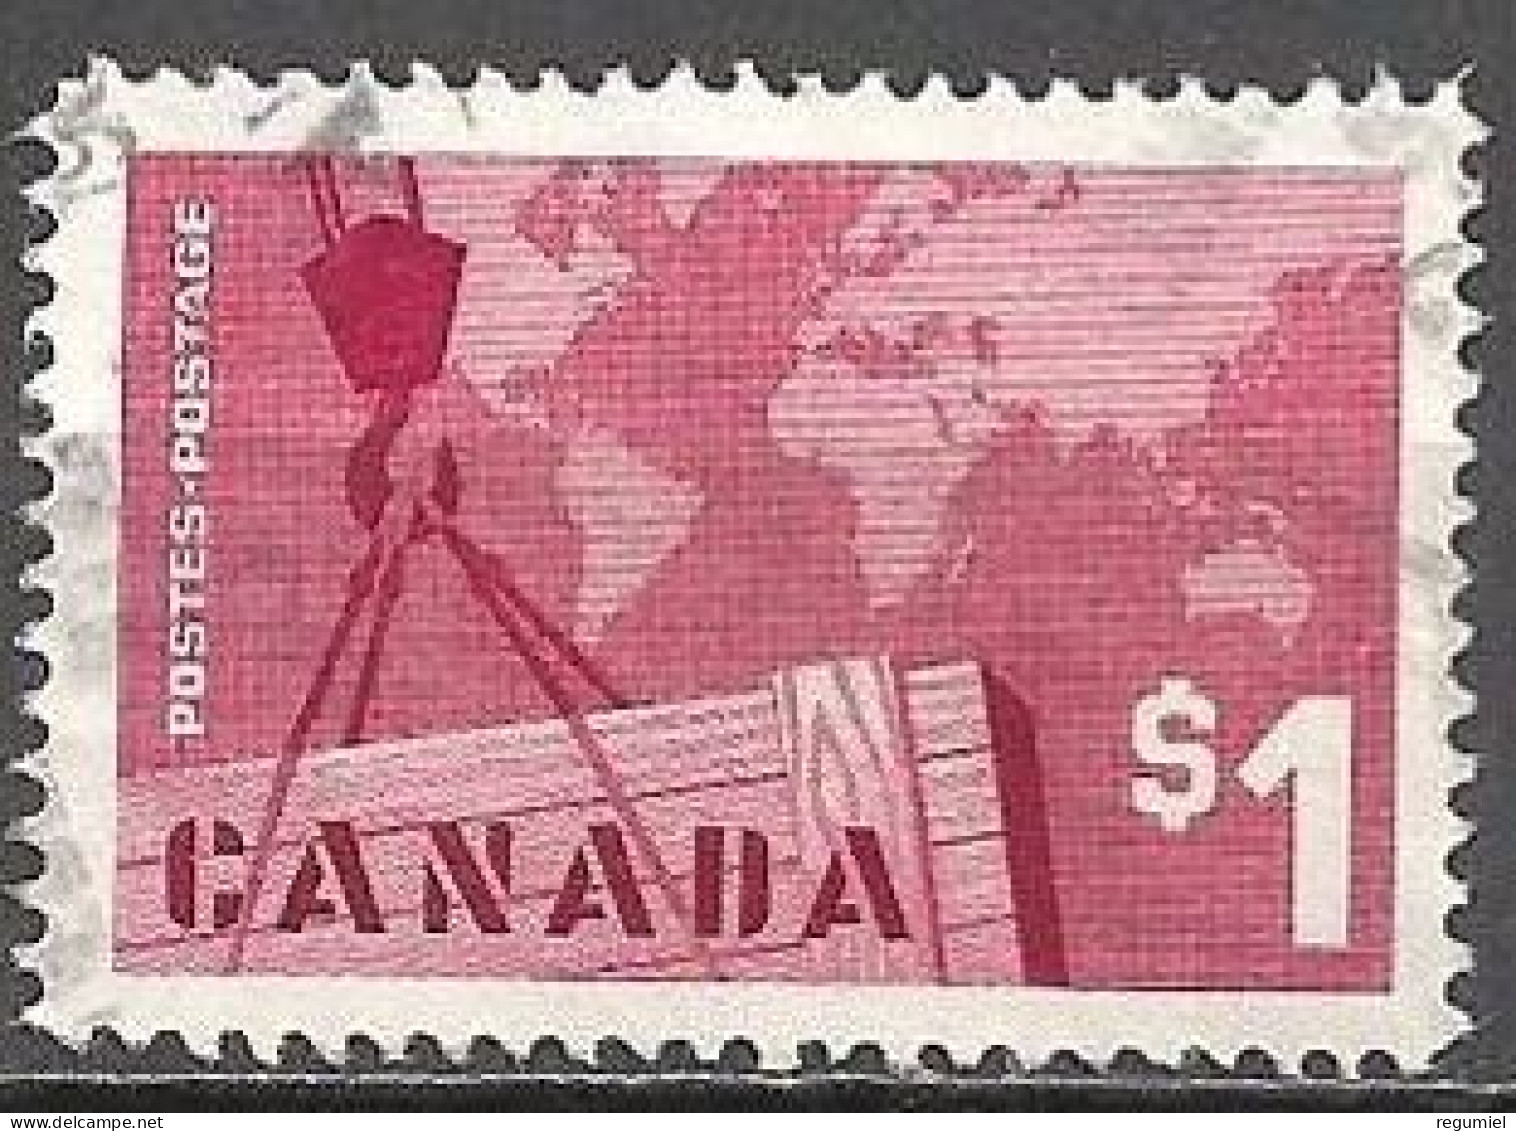 Canada U  334 (o) Usado. 1963 - Oblitérés